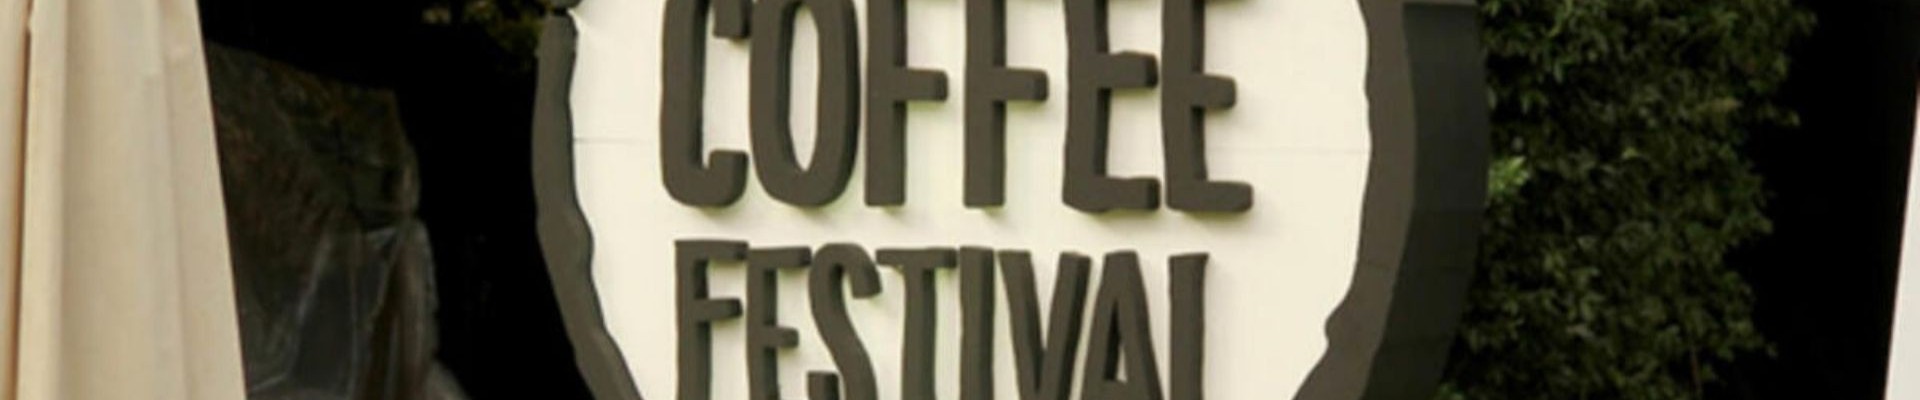 İstanbul Coffee Festival Biletleri